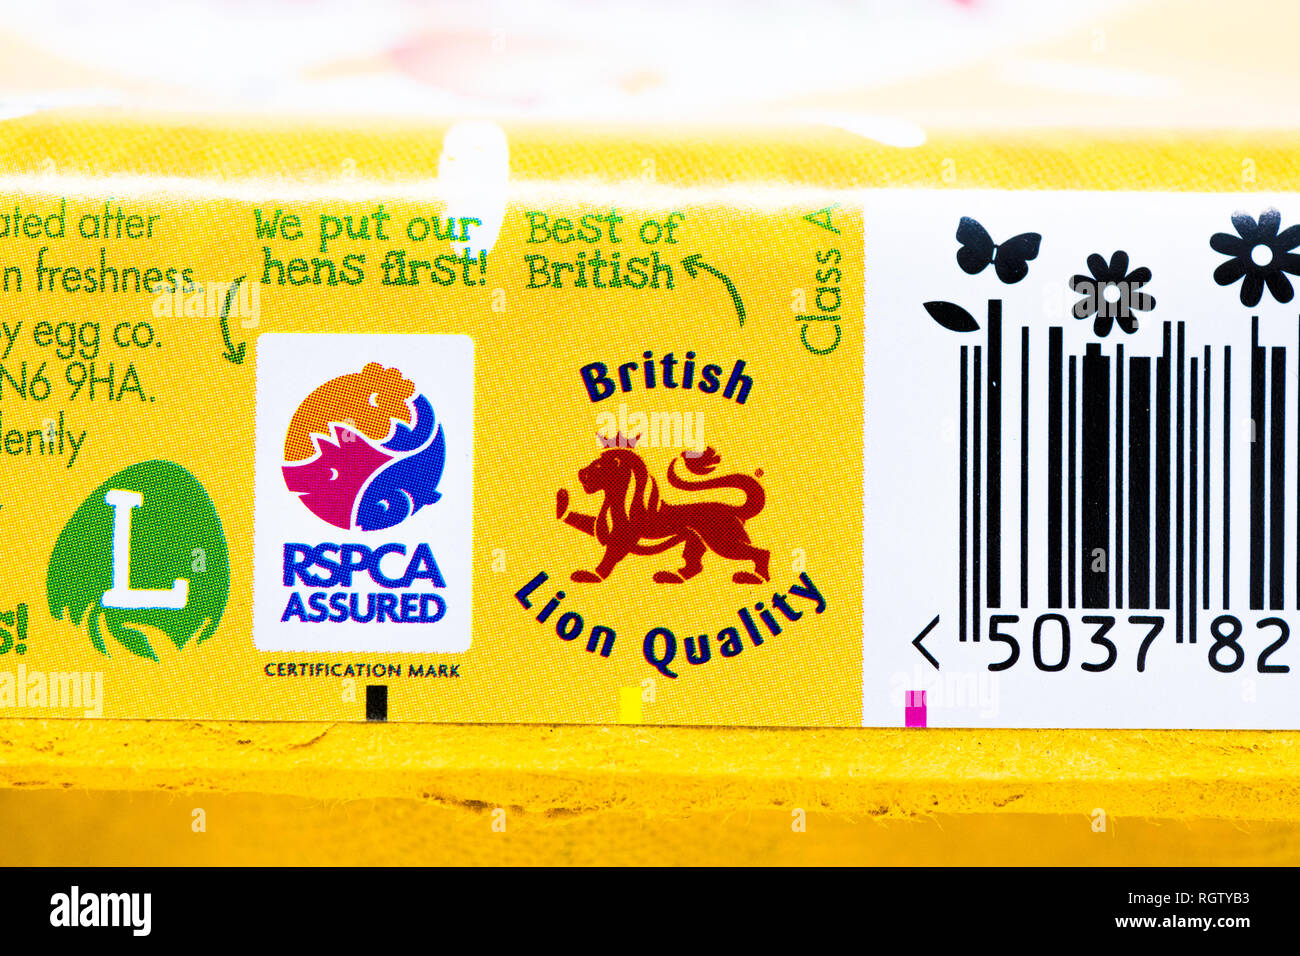 Die Happy Ei Co. ei Karton gestanzt mit der britischen Löwen Qualität und die Rspca versichert Logo. Stockfoto